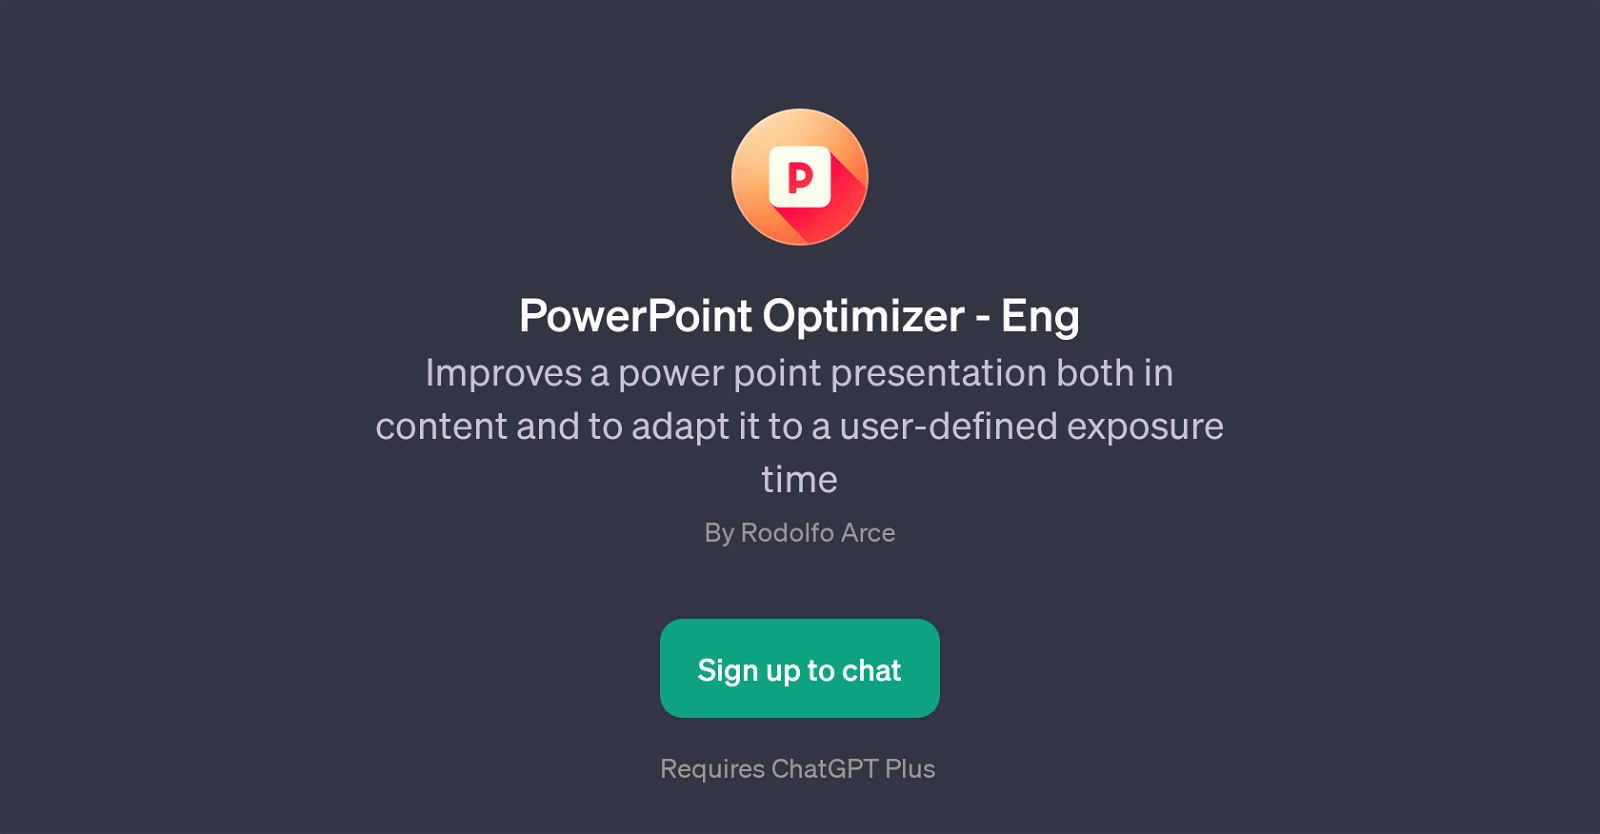 PowerPoint Optimizer - Eng website